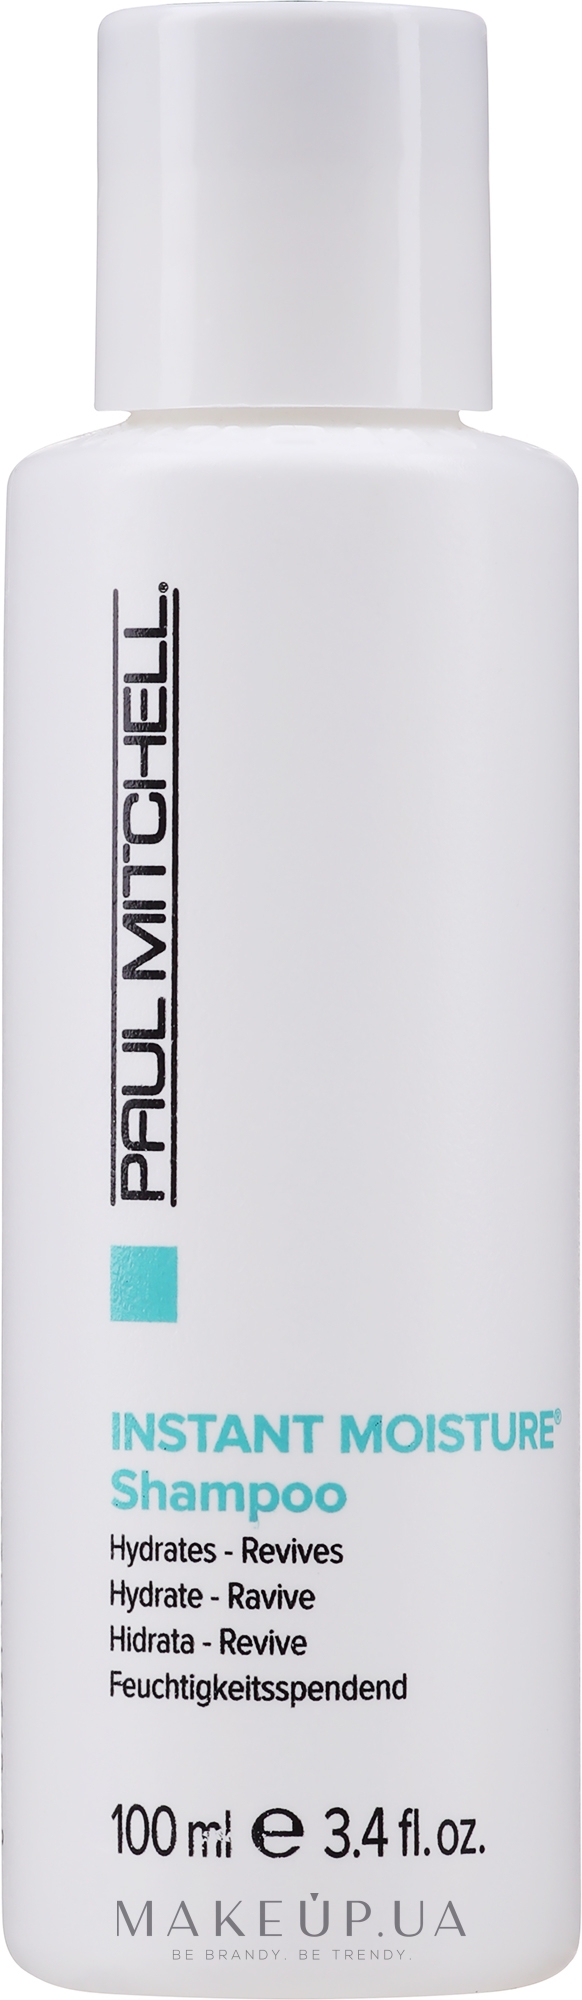 Миттєво зволожуючий шампунь для щоденного використання - Paul Mitchell Moisture Instant Moisture Daily Shampoo — фото 100ml